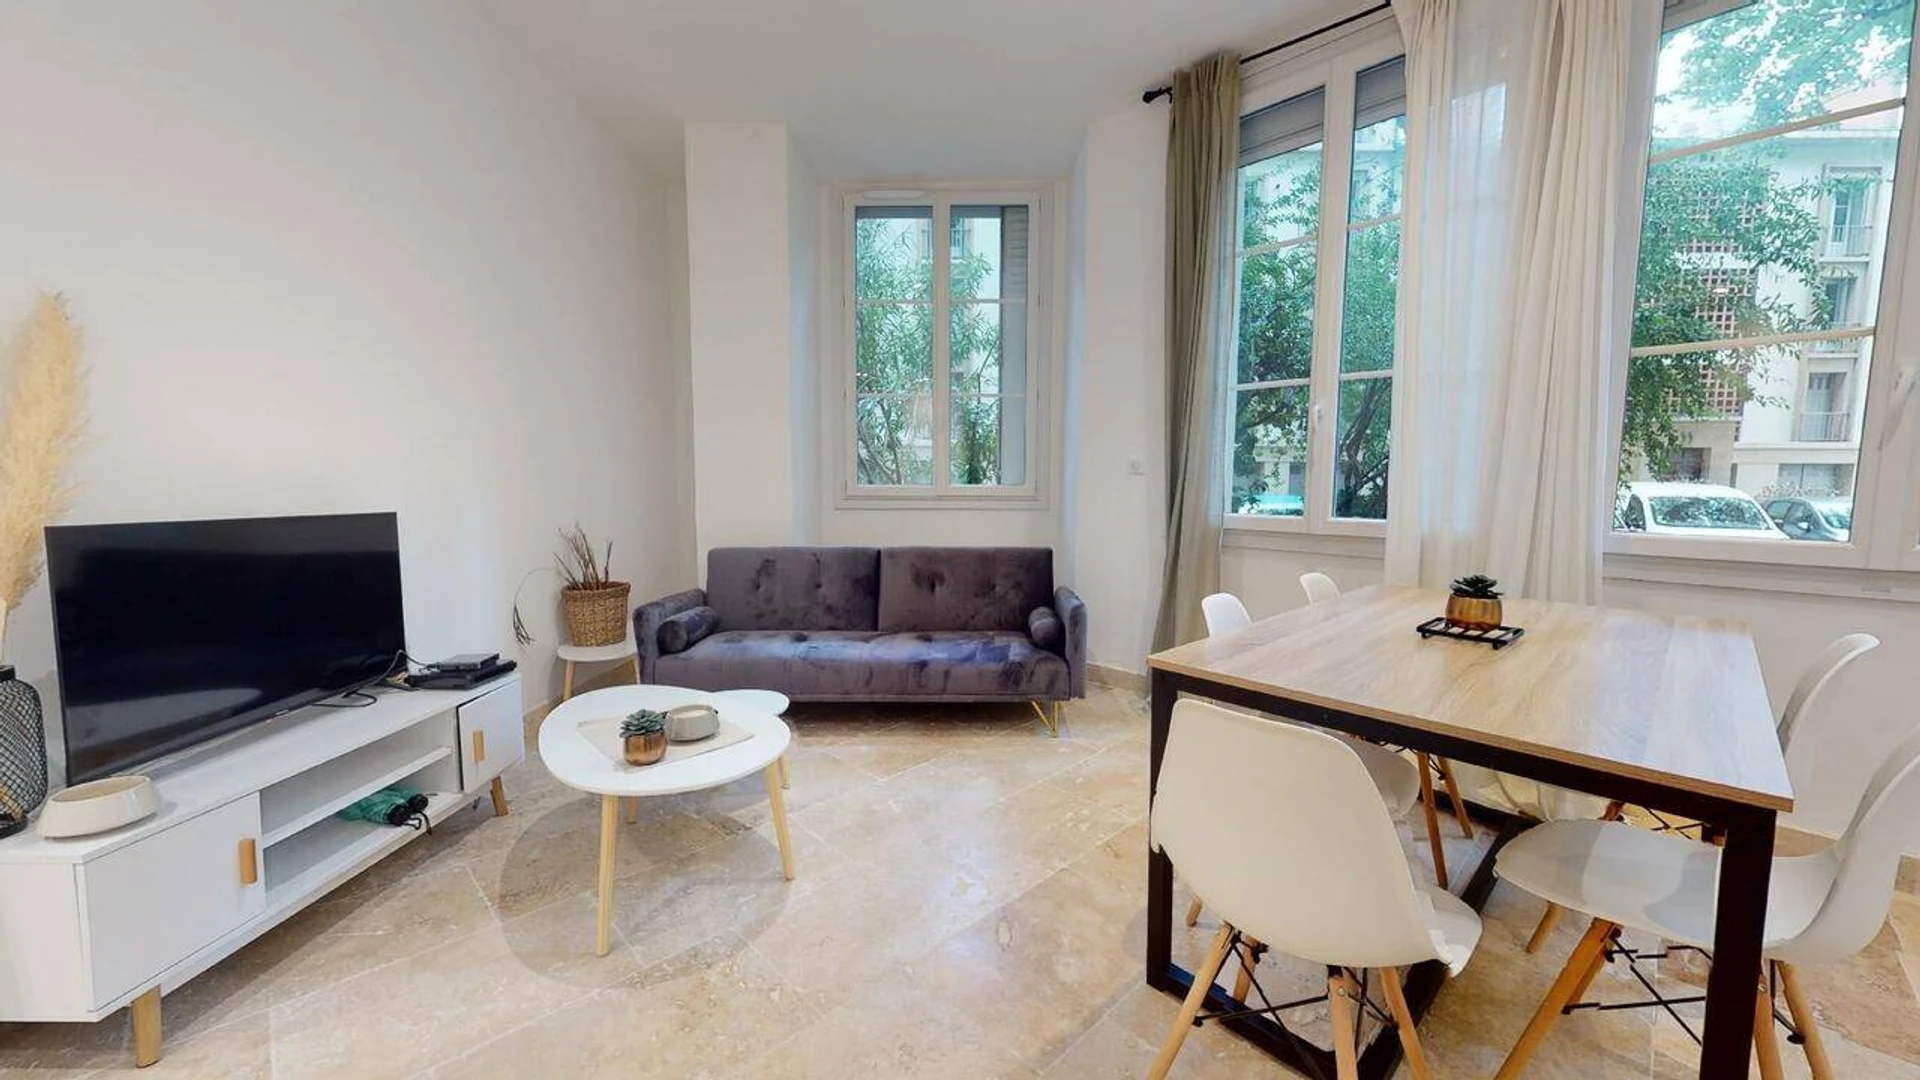 Alquiler de habitación en piso compartido en Avignon